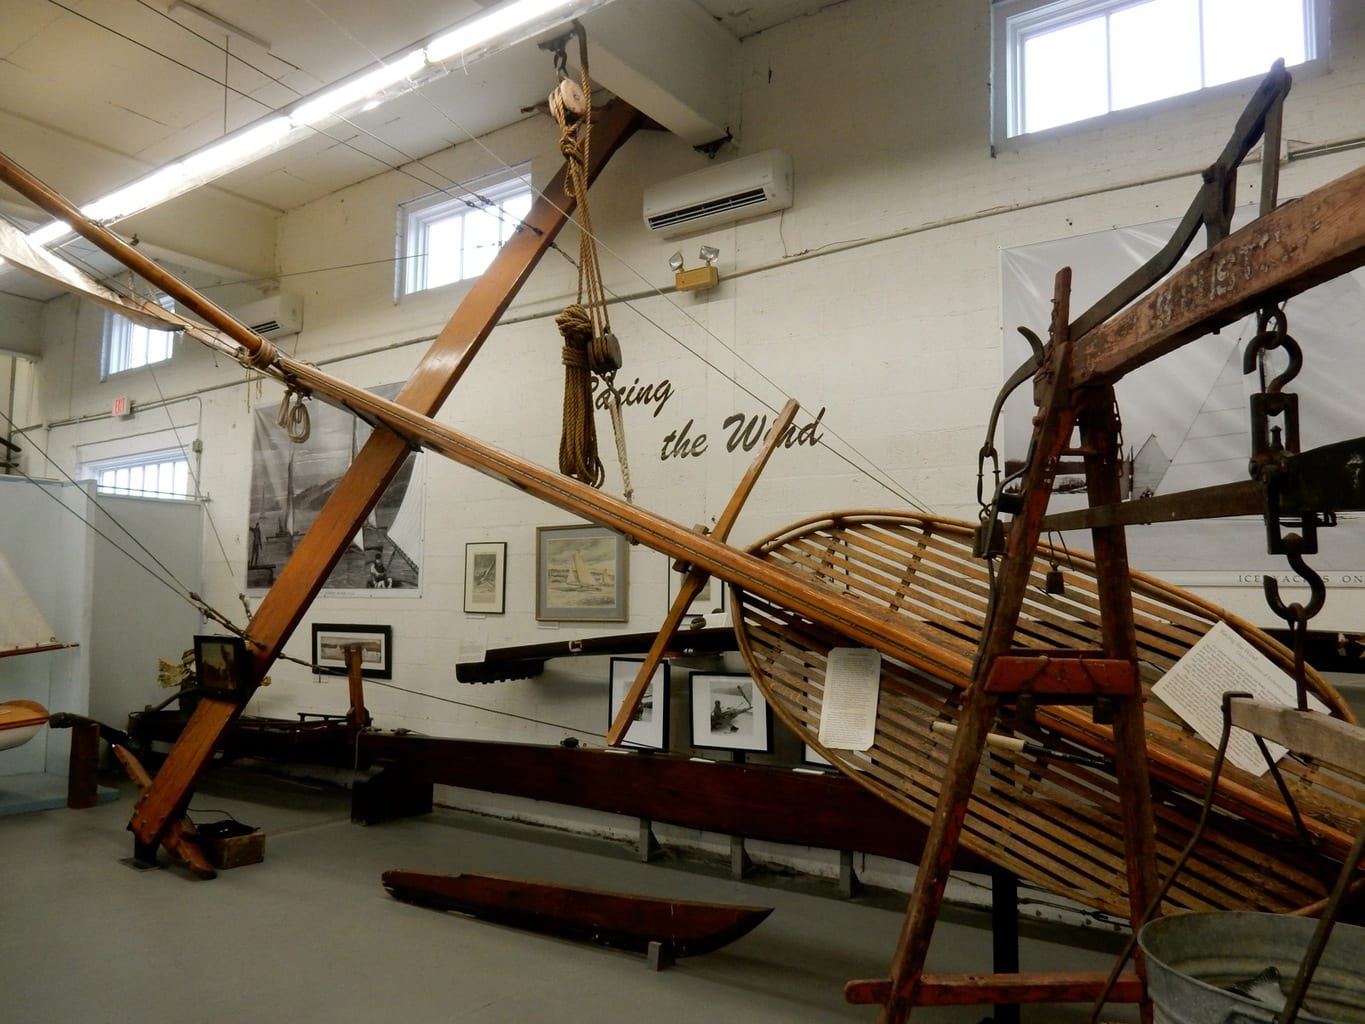 ice-boats-hudson-maritime-museum-kingston-ny